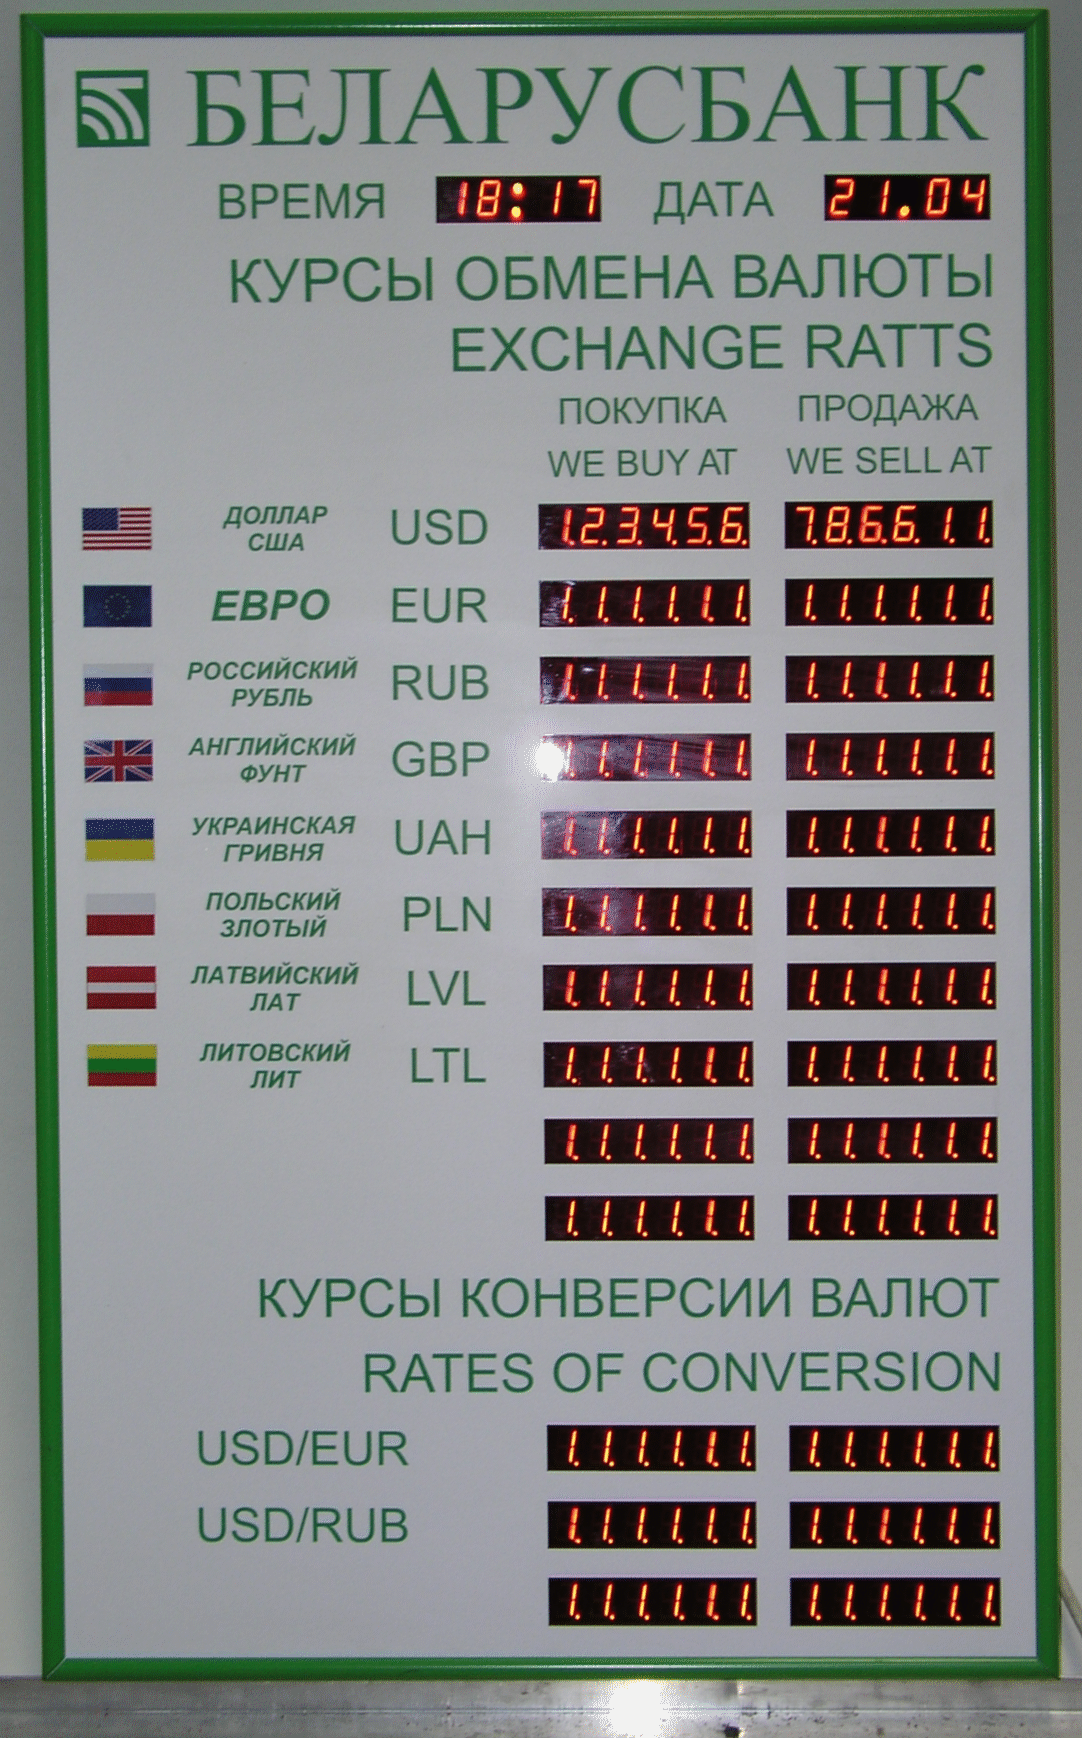 Беларусбанк обмен валюты курсы trade litecoin for ripple binance